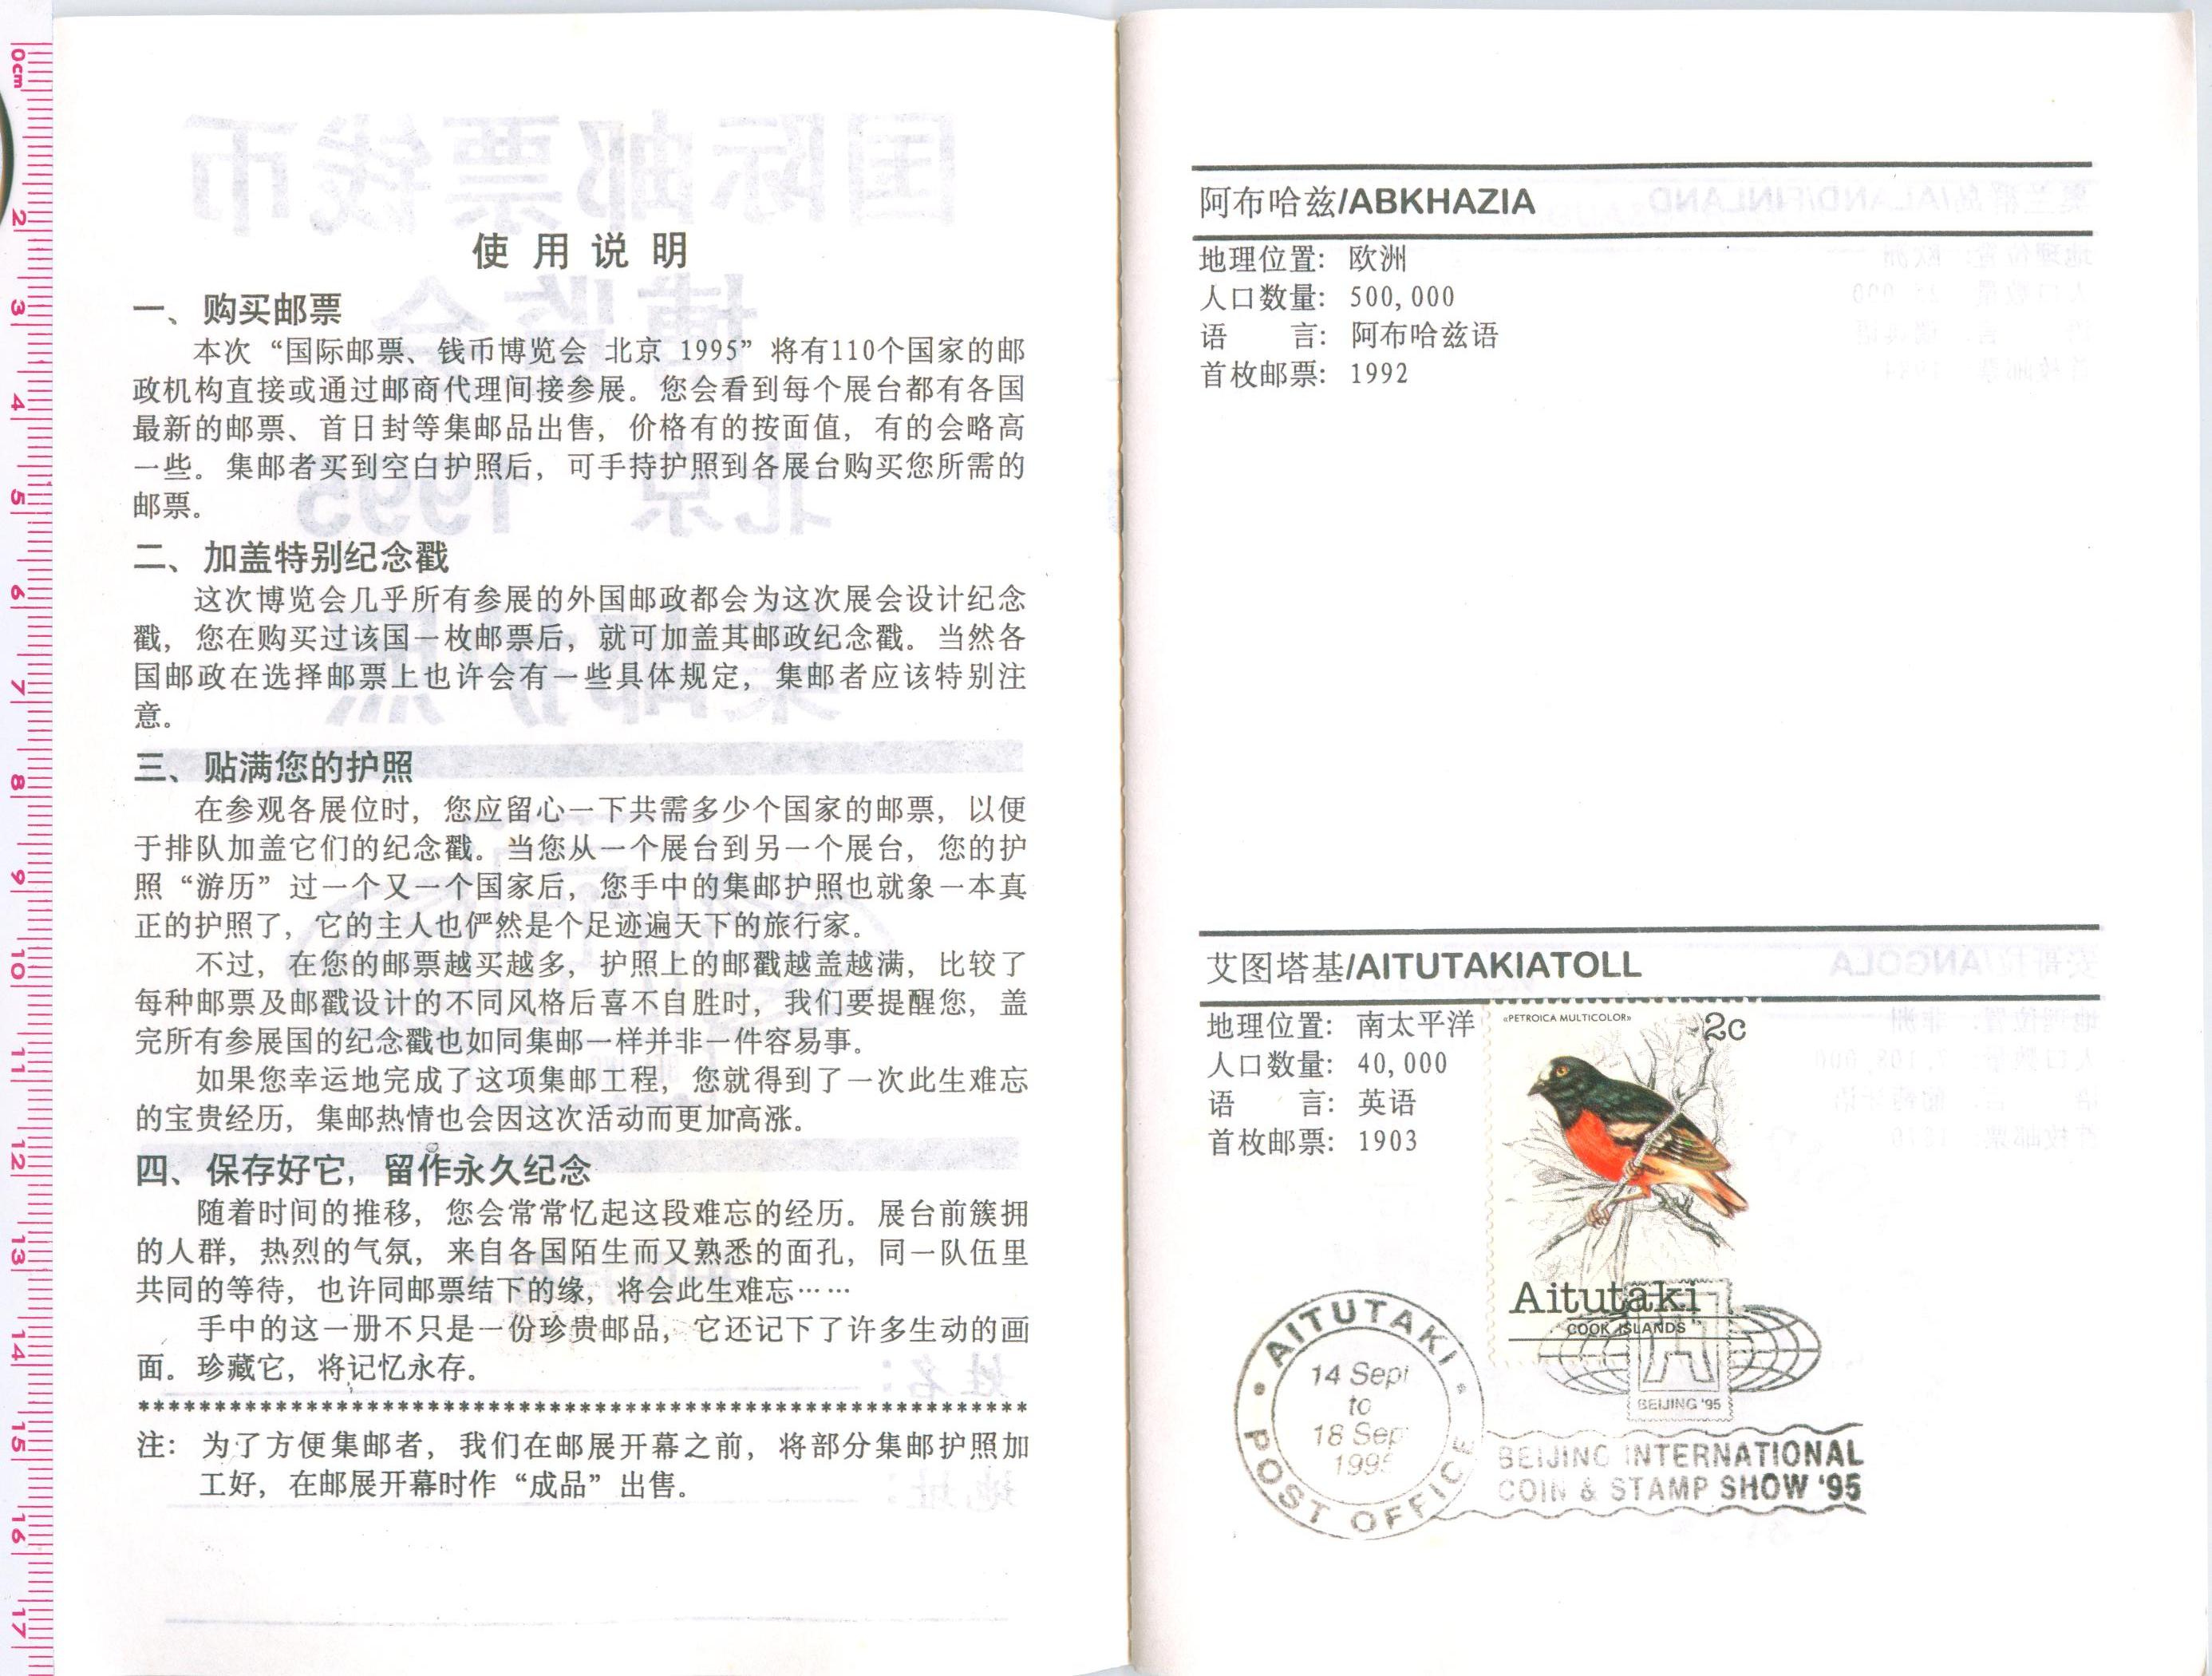 M9012, China Beijing 1995 -- International Philatelic Passport - Click Image to Close